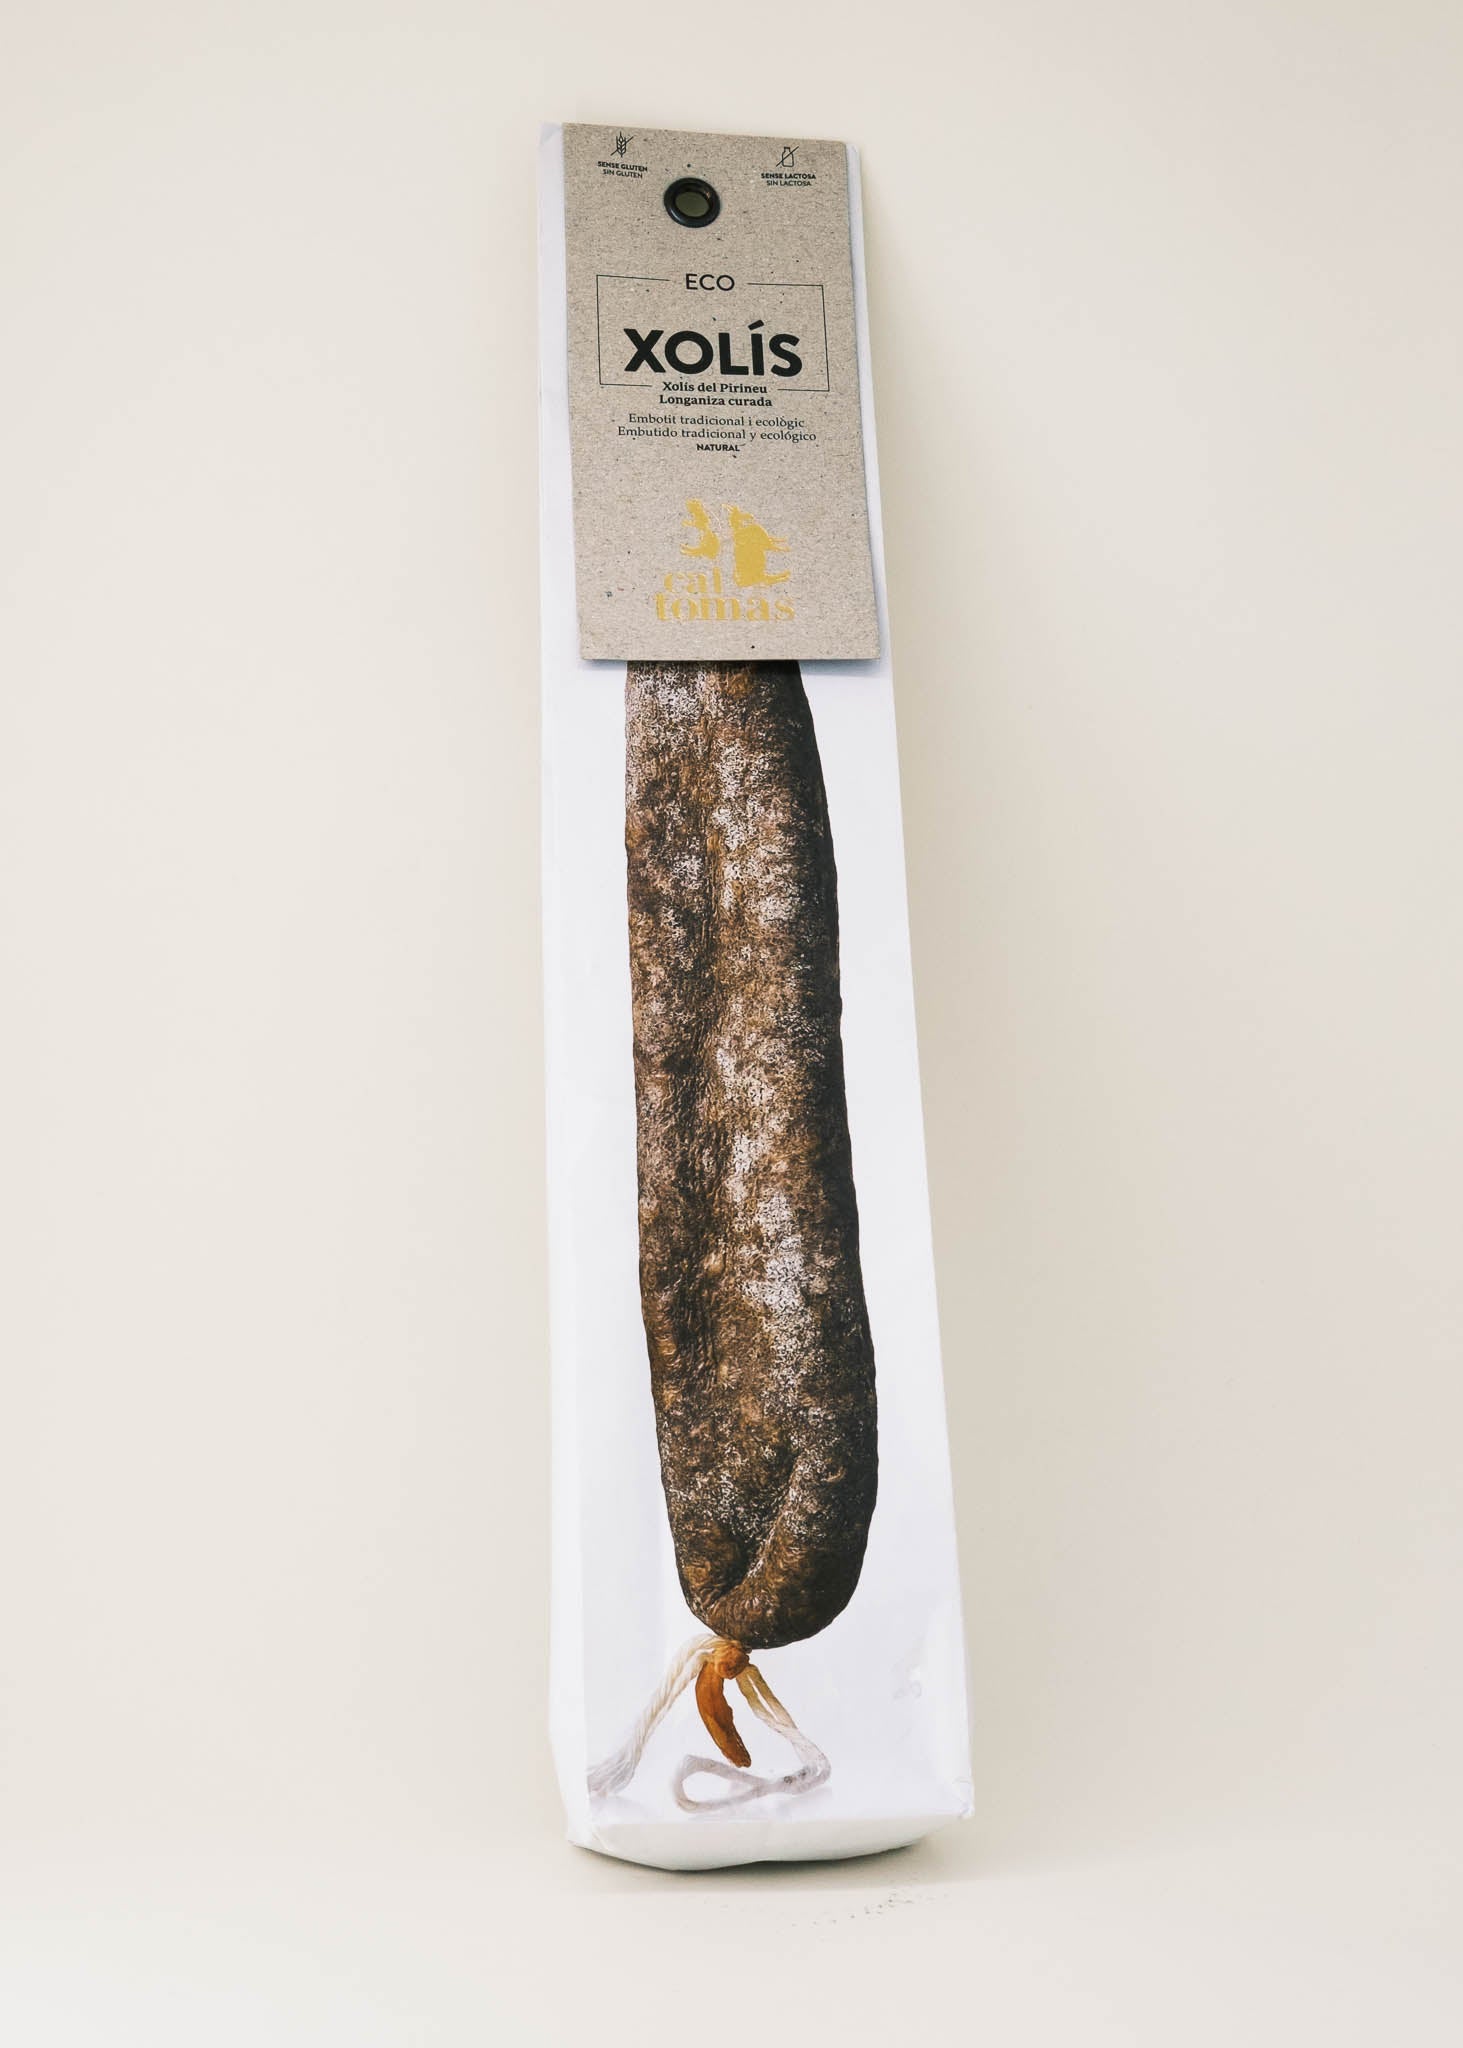 Xolís from the Pirineu